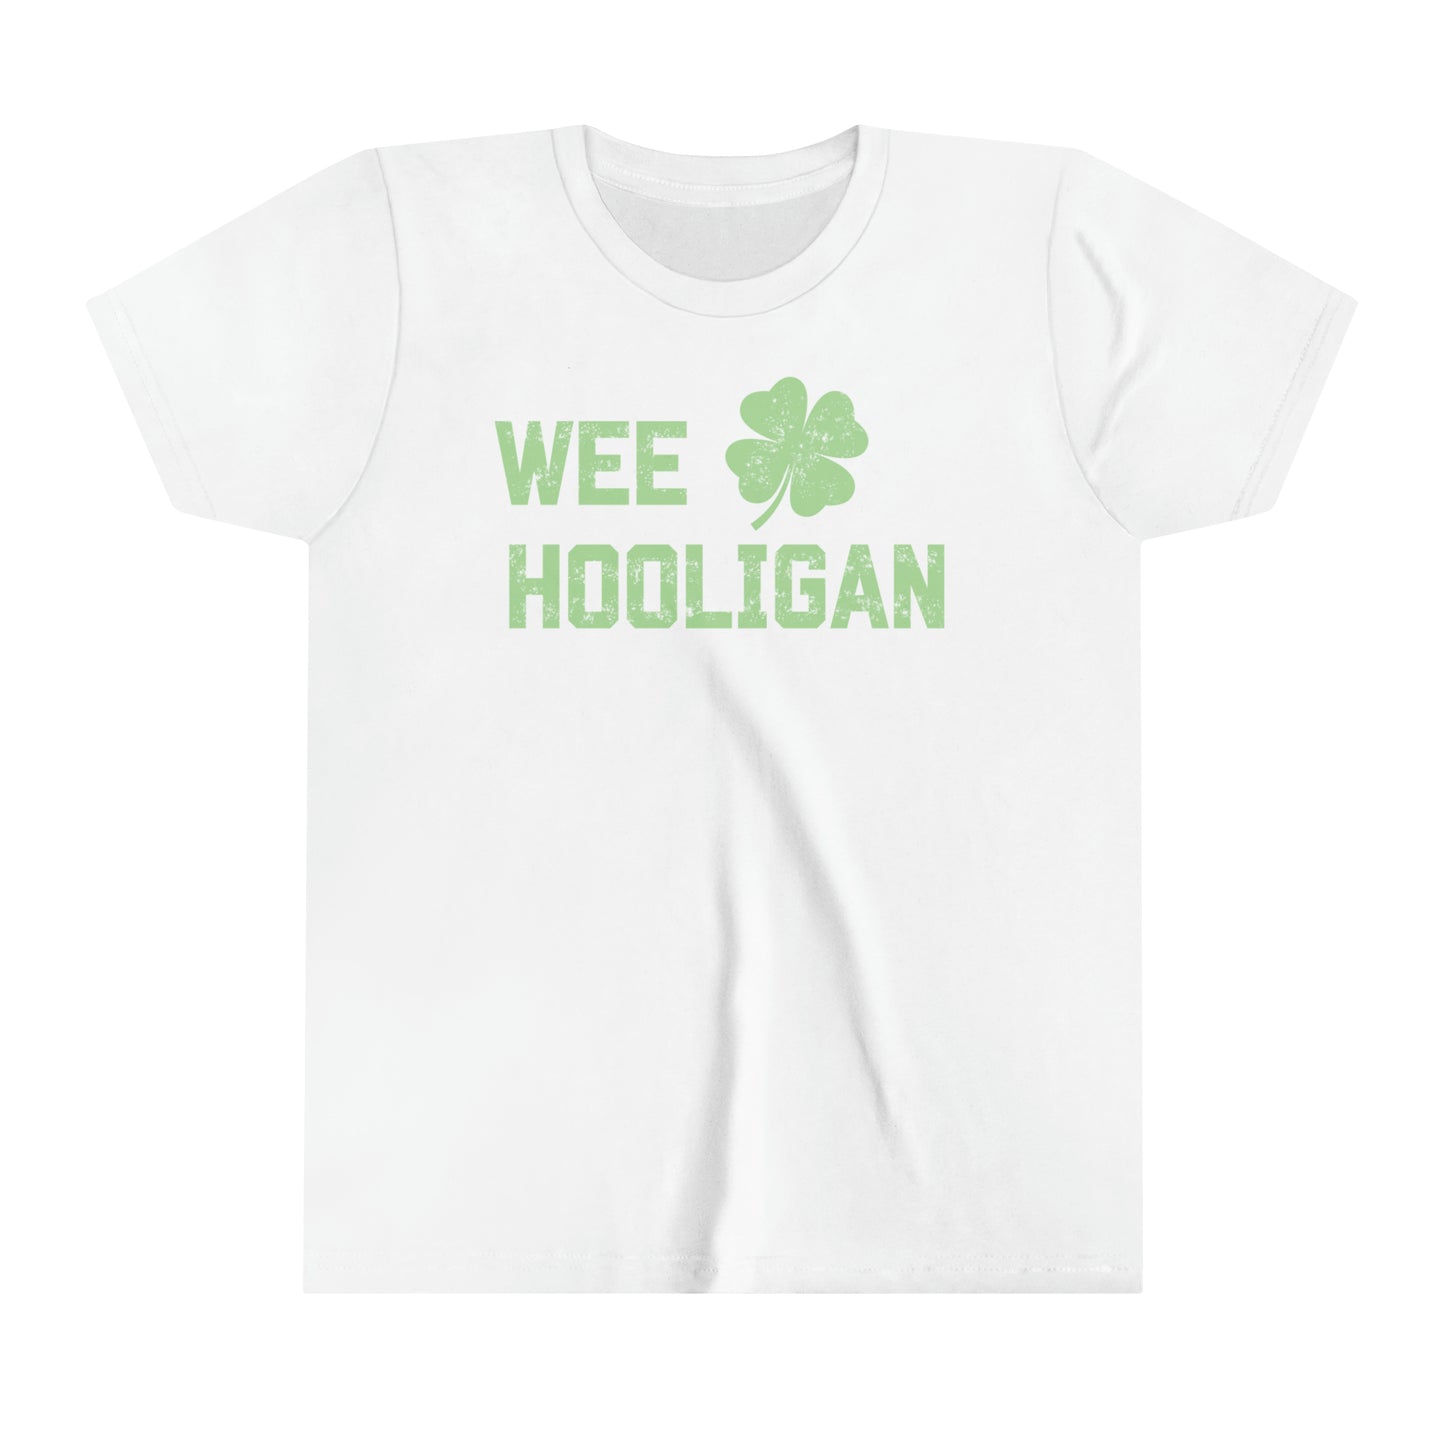 Wee Hooligan - Youth Jersey Short Sleeve Tee